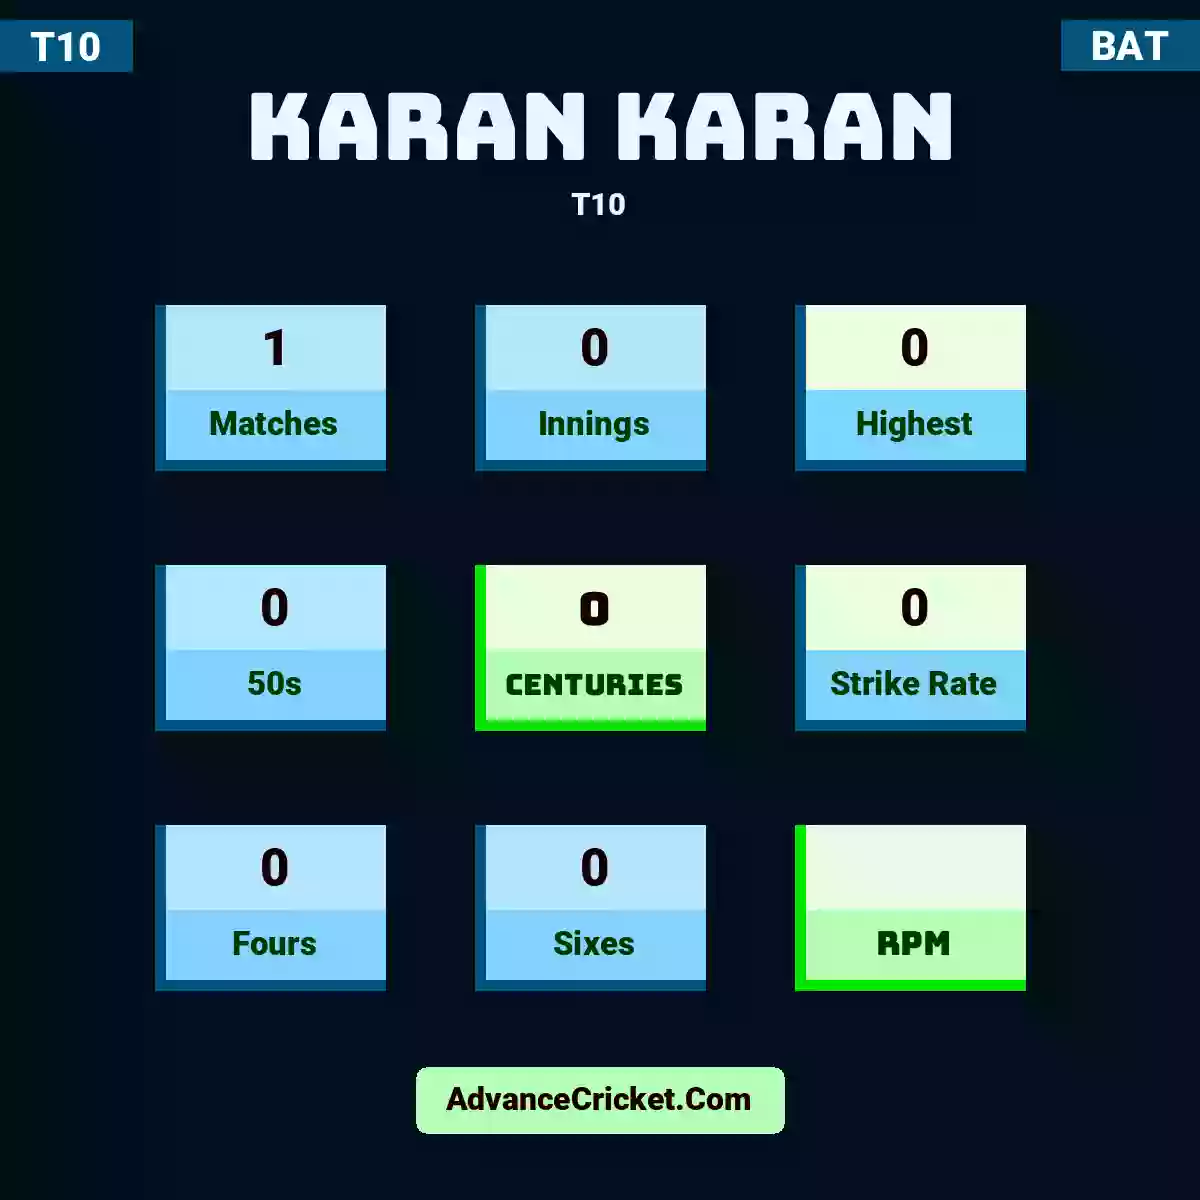 Karan Karan T10 , Karan Karan played 1 matches, scored 0 runs as highest, 0 half-centuries, and 0 centuries, with a strike rate of 0. K.Karan hit 0 fours and 0 sixes.